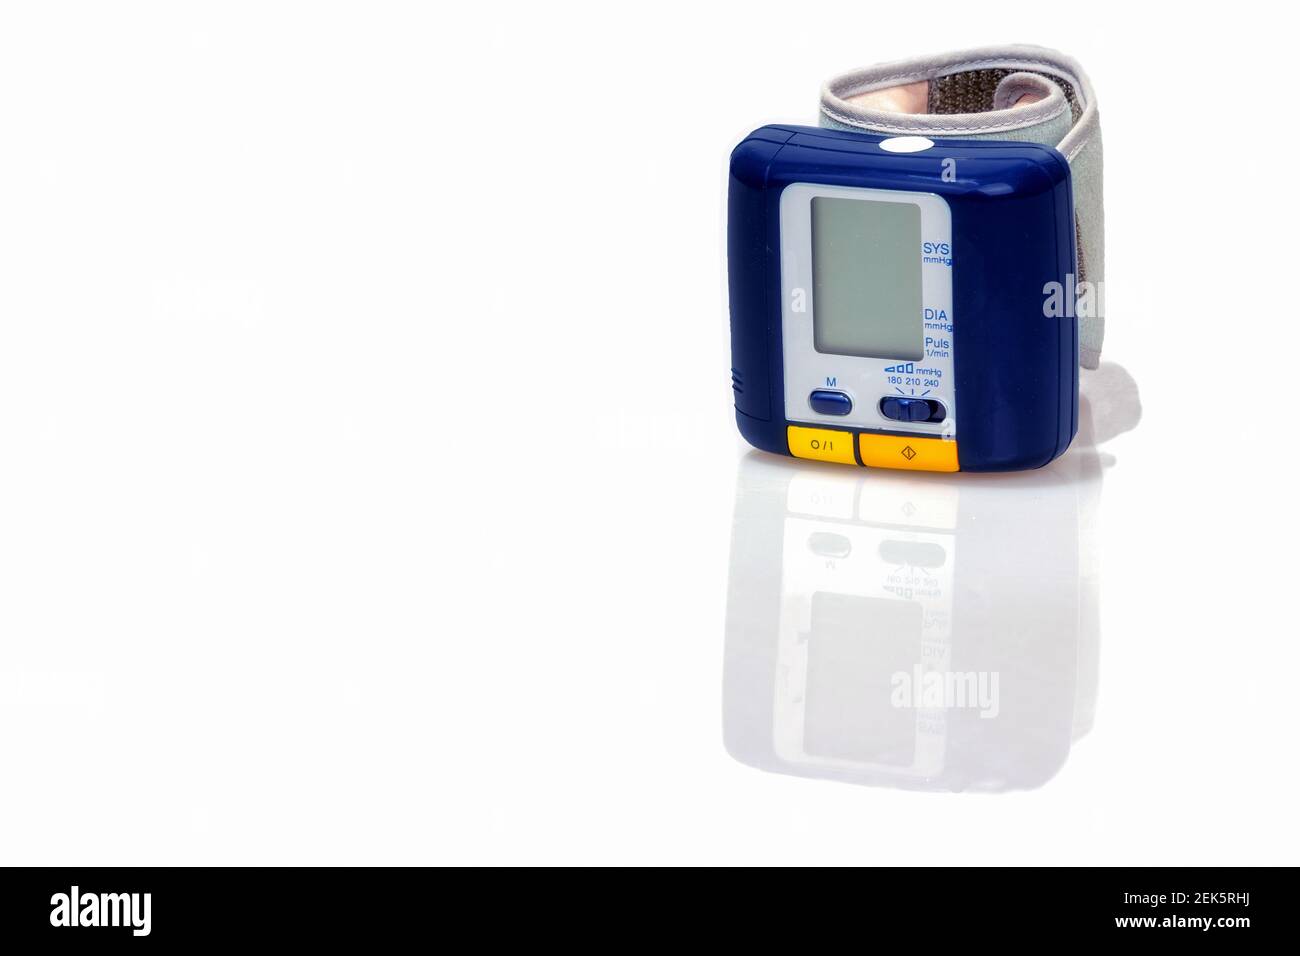 Moniteur de pression artérielle numérique LCD sur poignet avec moniteur de fréquence cardiaque Banque D'Images